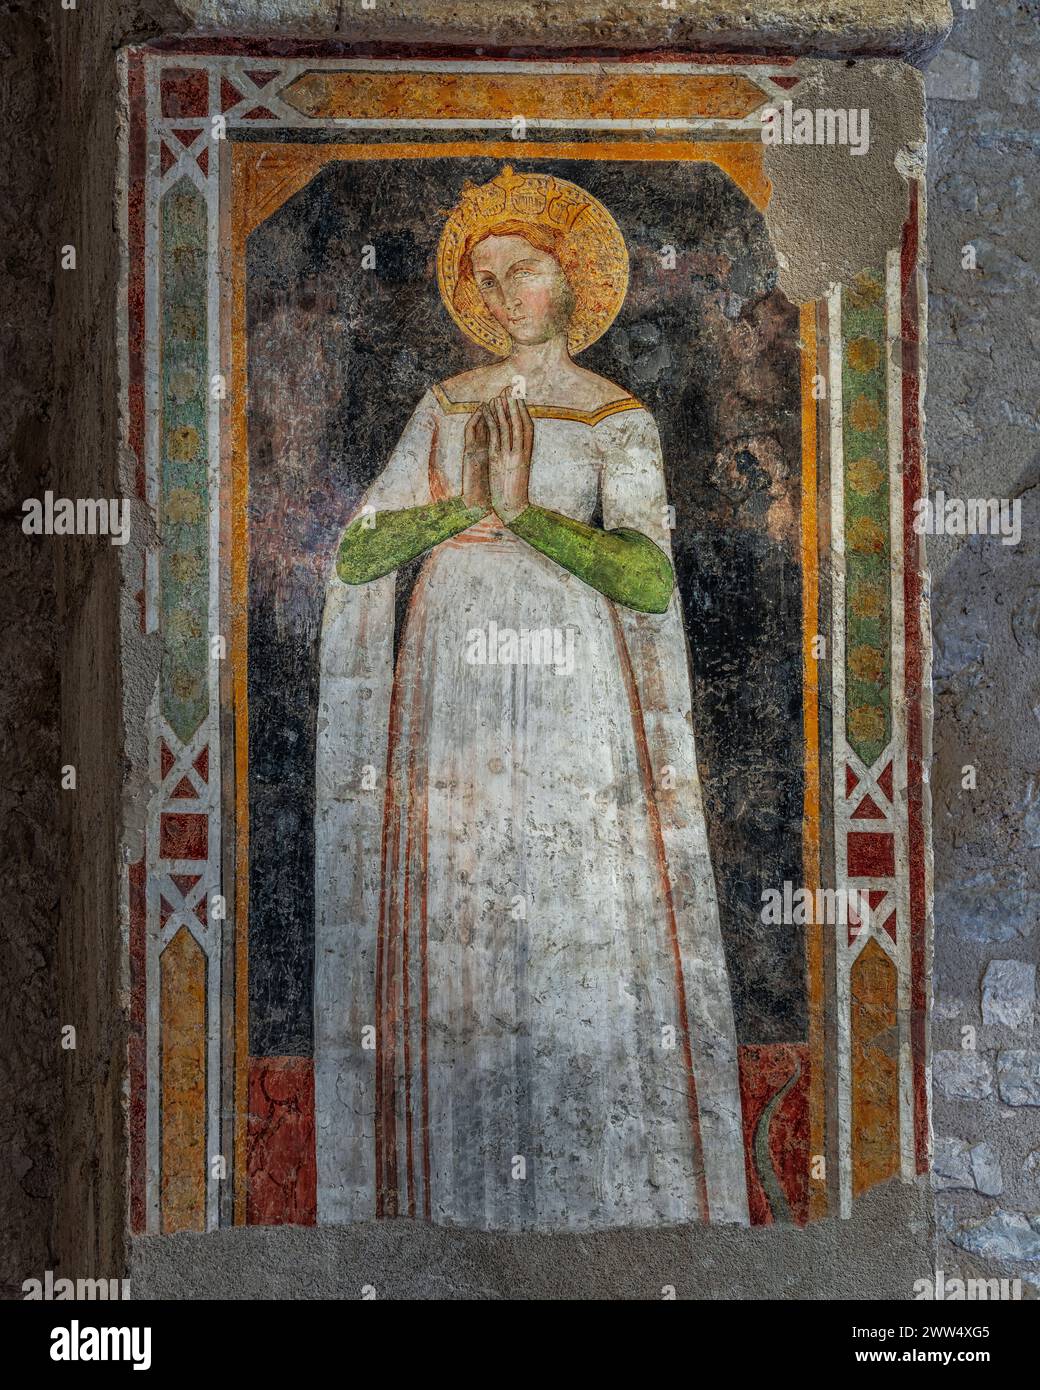 Mittelalterliches Fresko einer Frau in weiß gekleidet mit goldener Krone und Halo. Basilika Santa Maria di Collemaggio, L'Aquila, Abruzzen, Italien, Europa Stockfoto